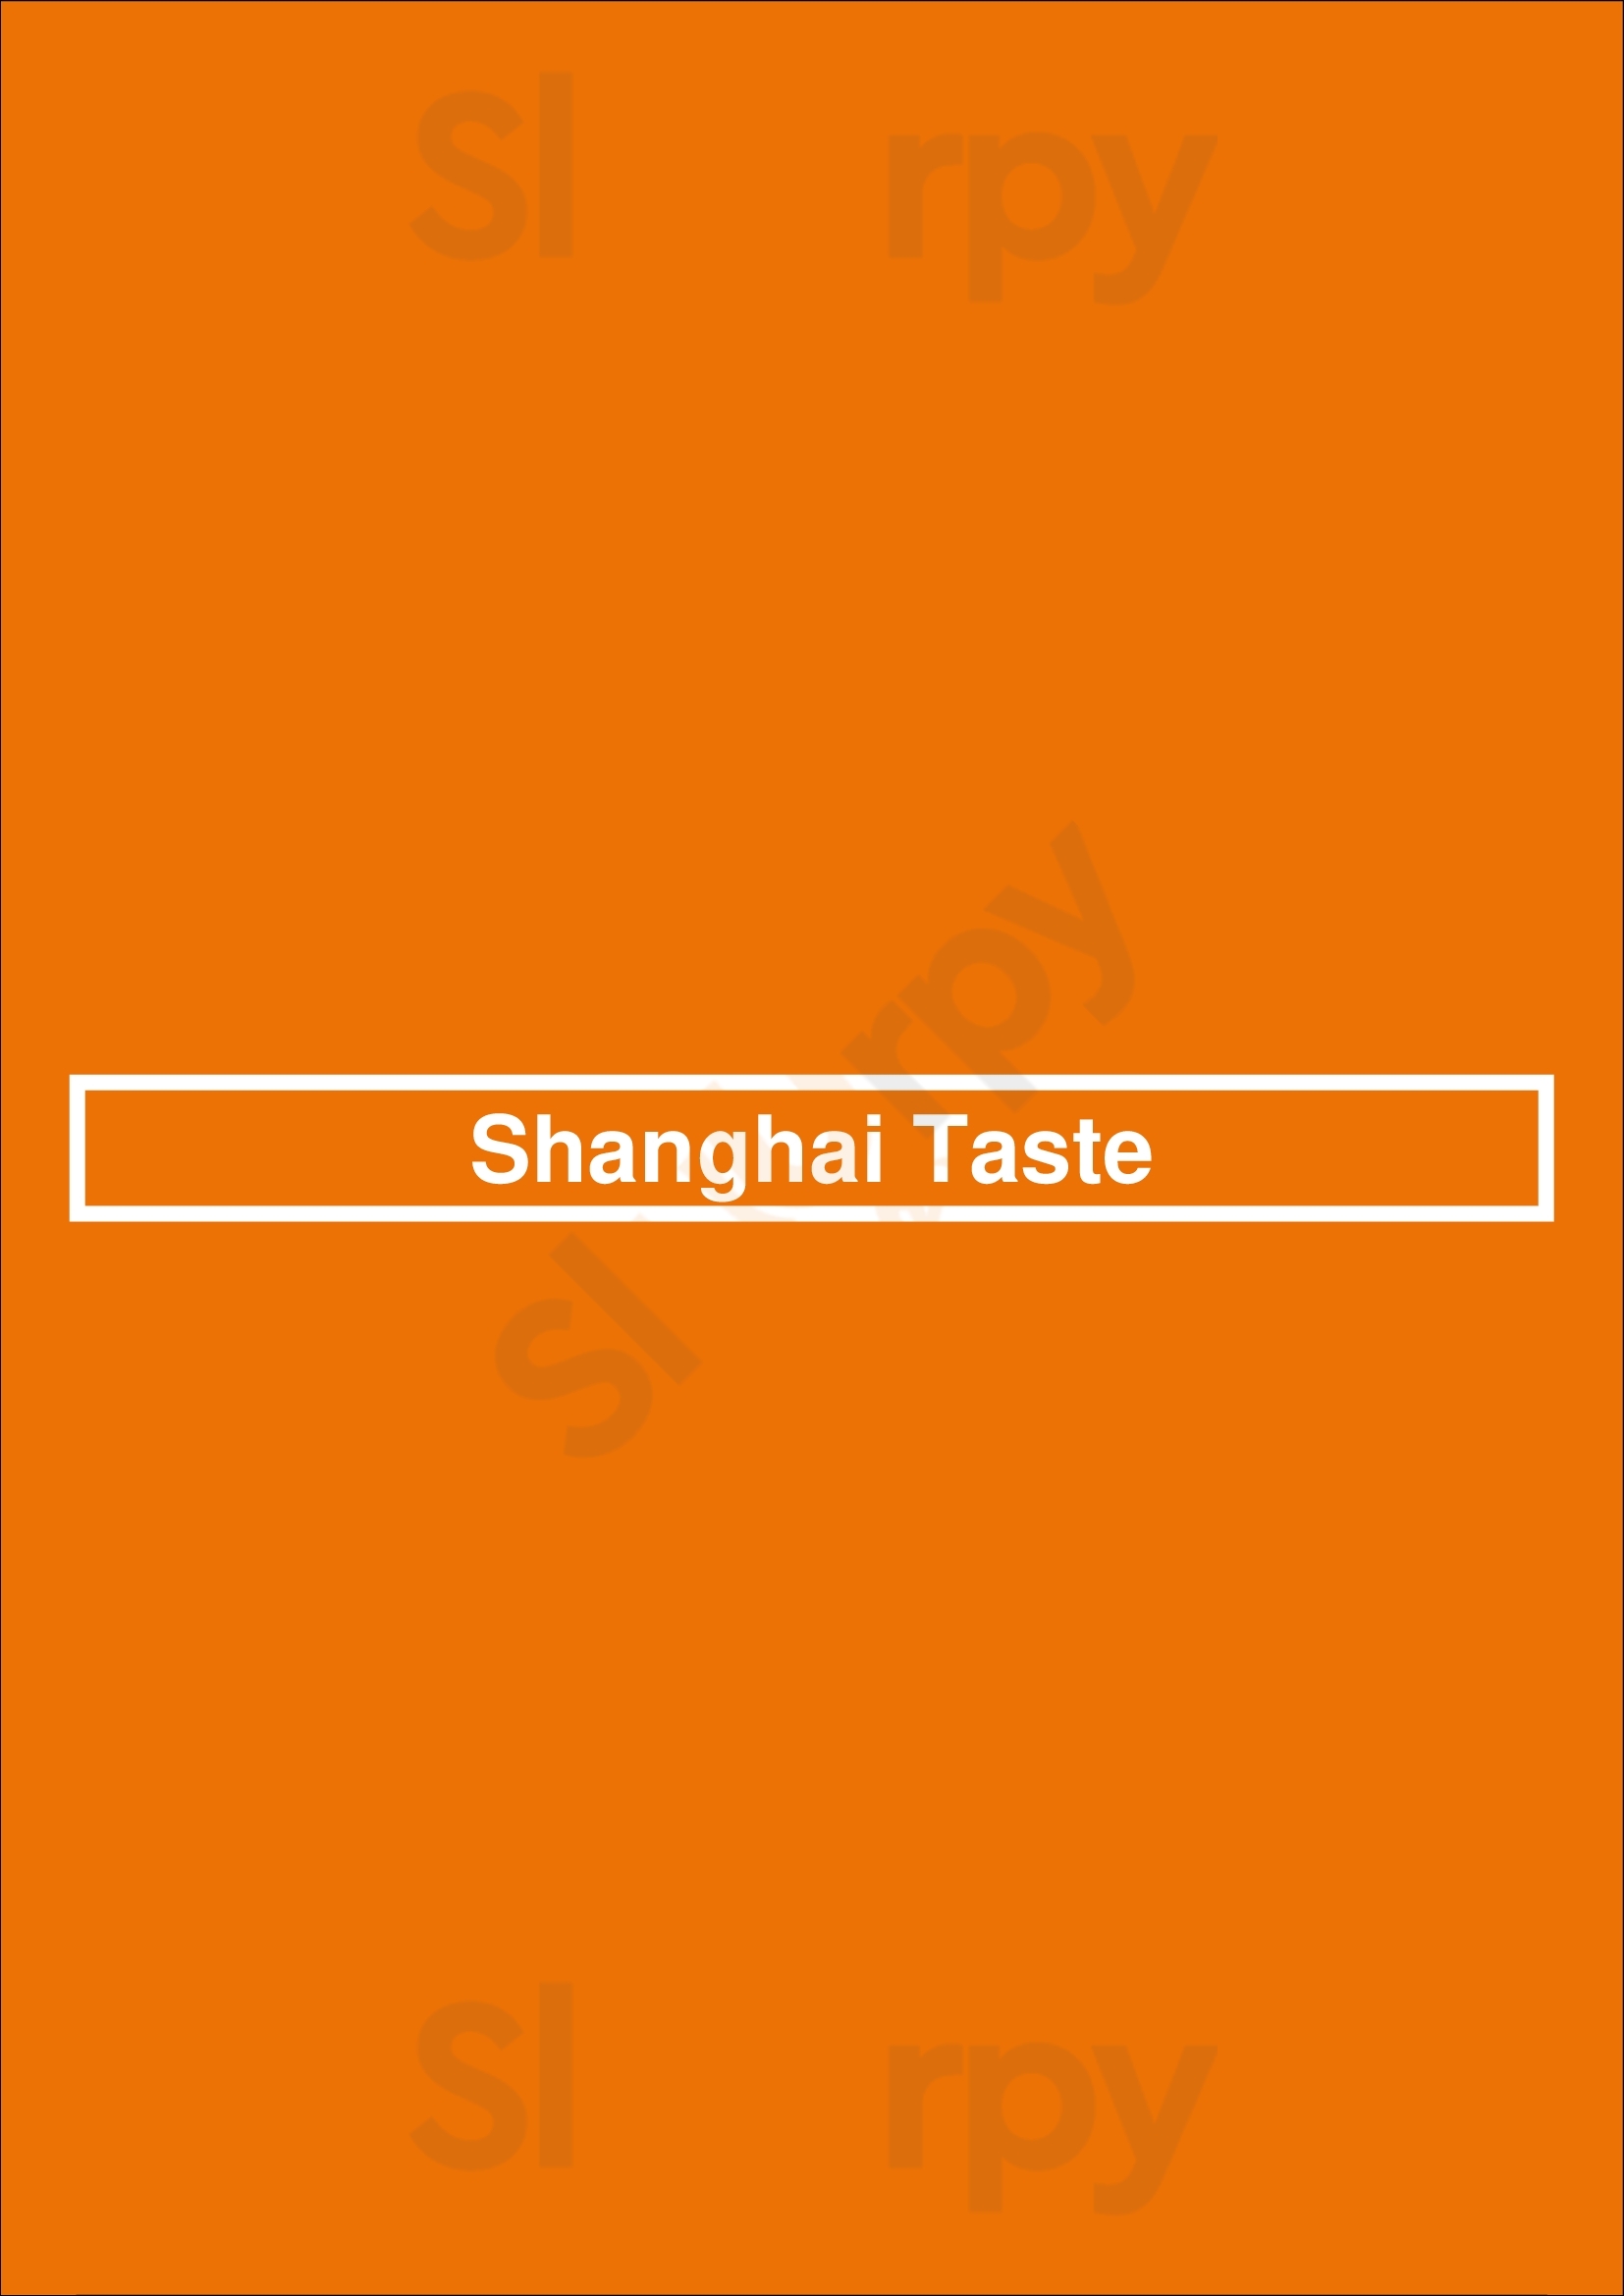 Shanghai Taste London Menu - 1